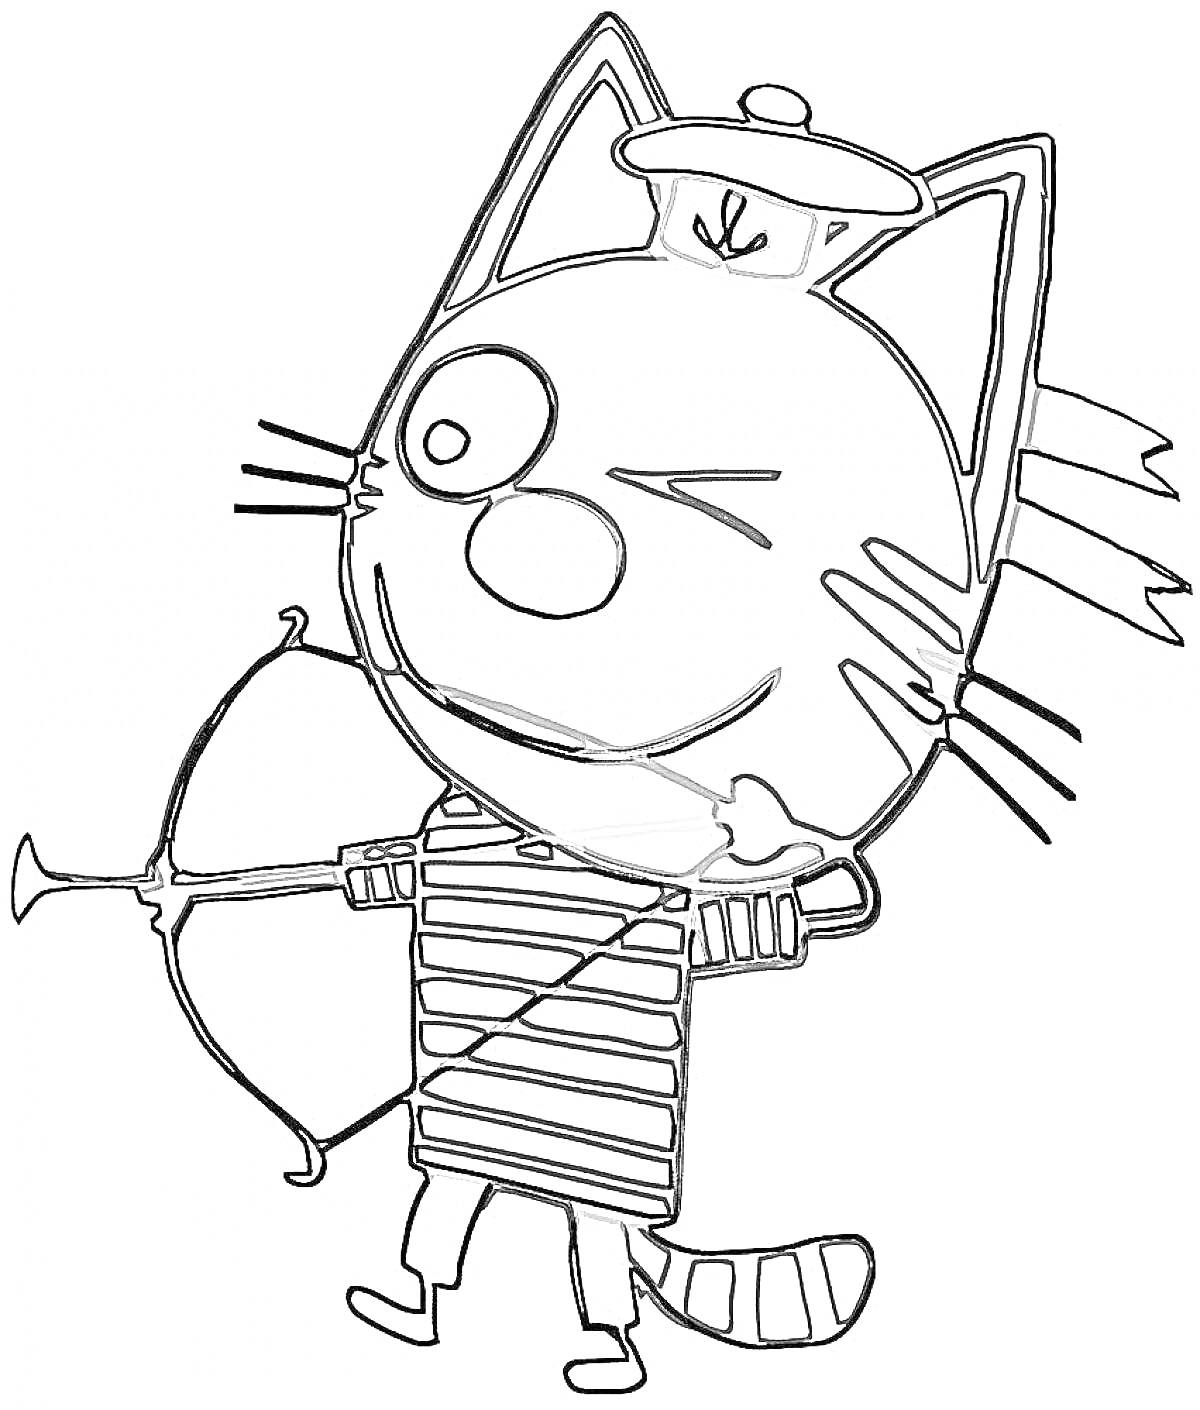 Котенок в тельняшке с луком и стрелой